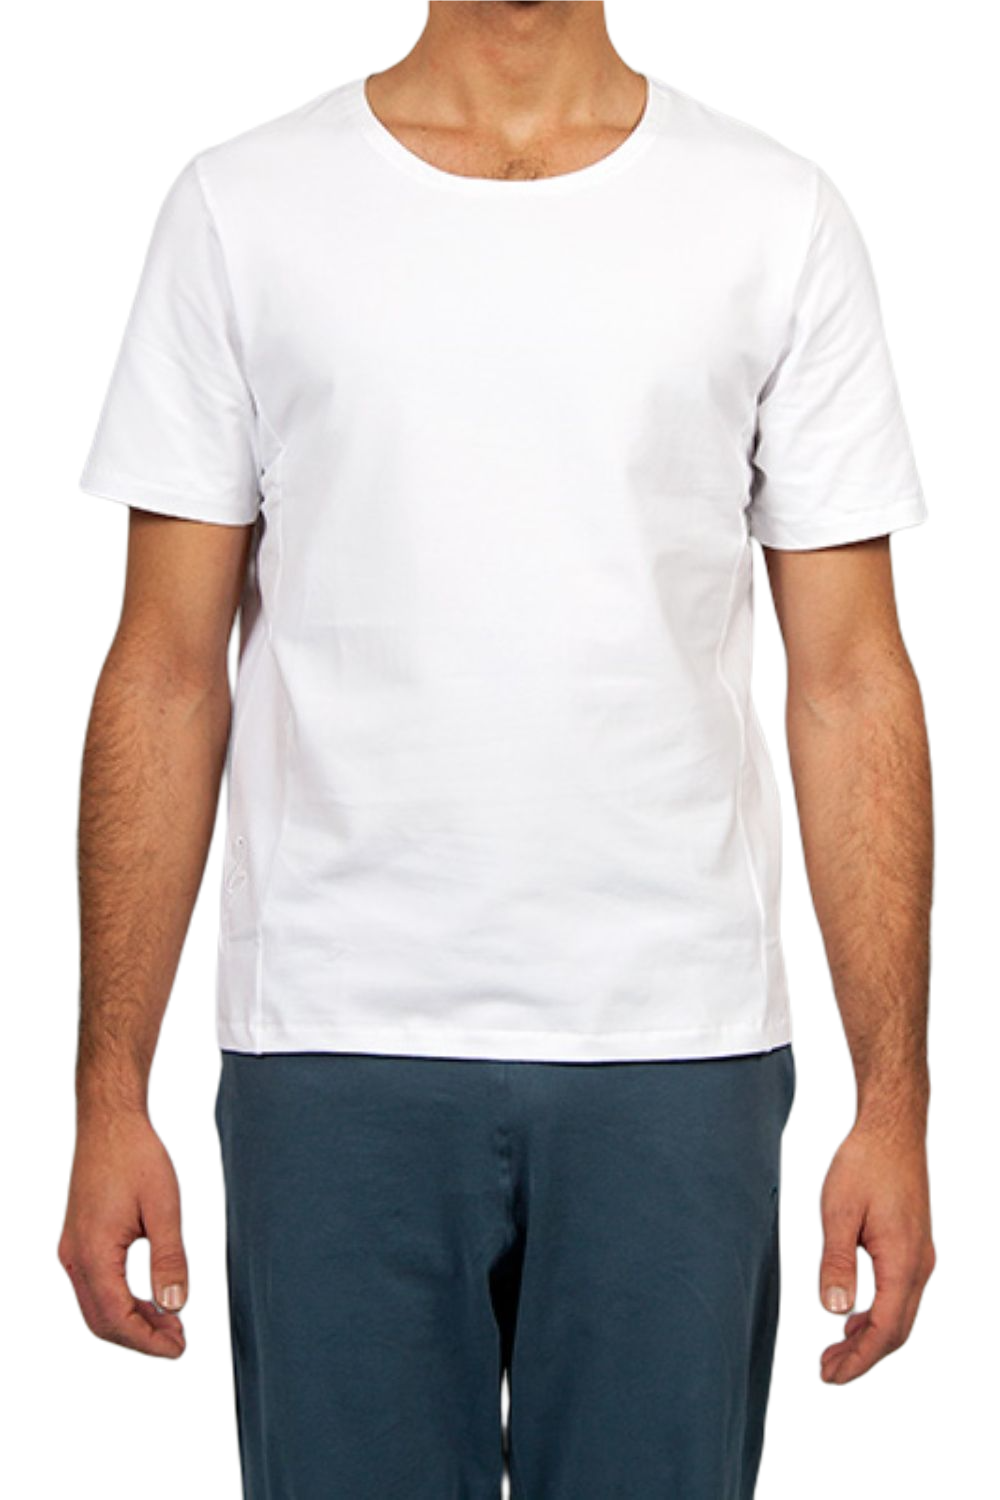 Mahan Shirt for Men White